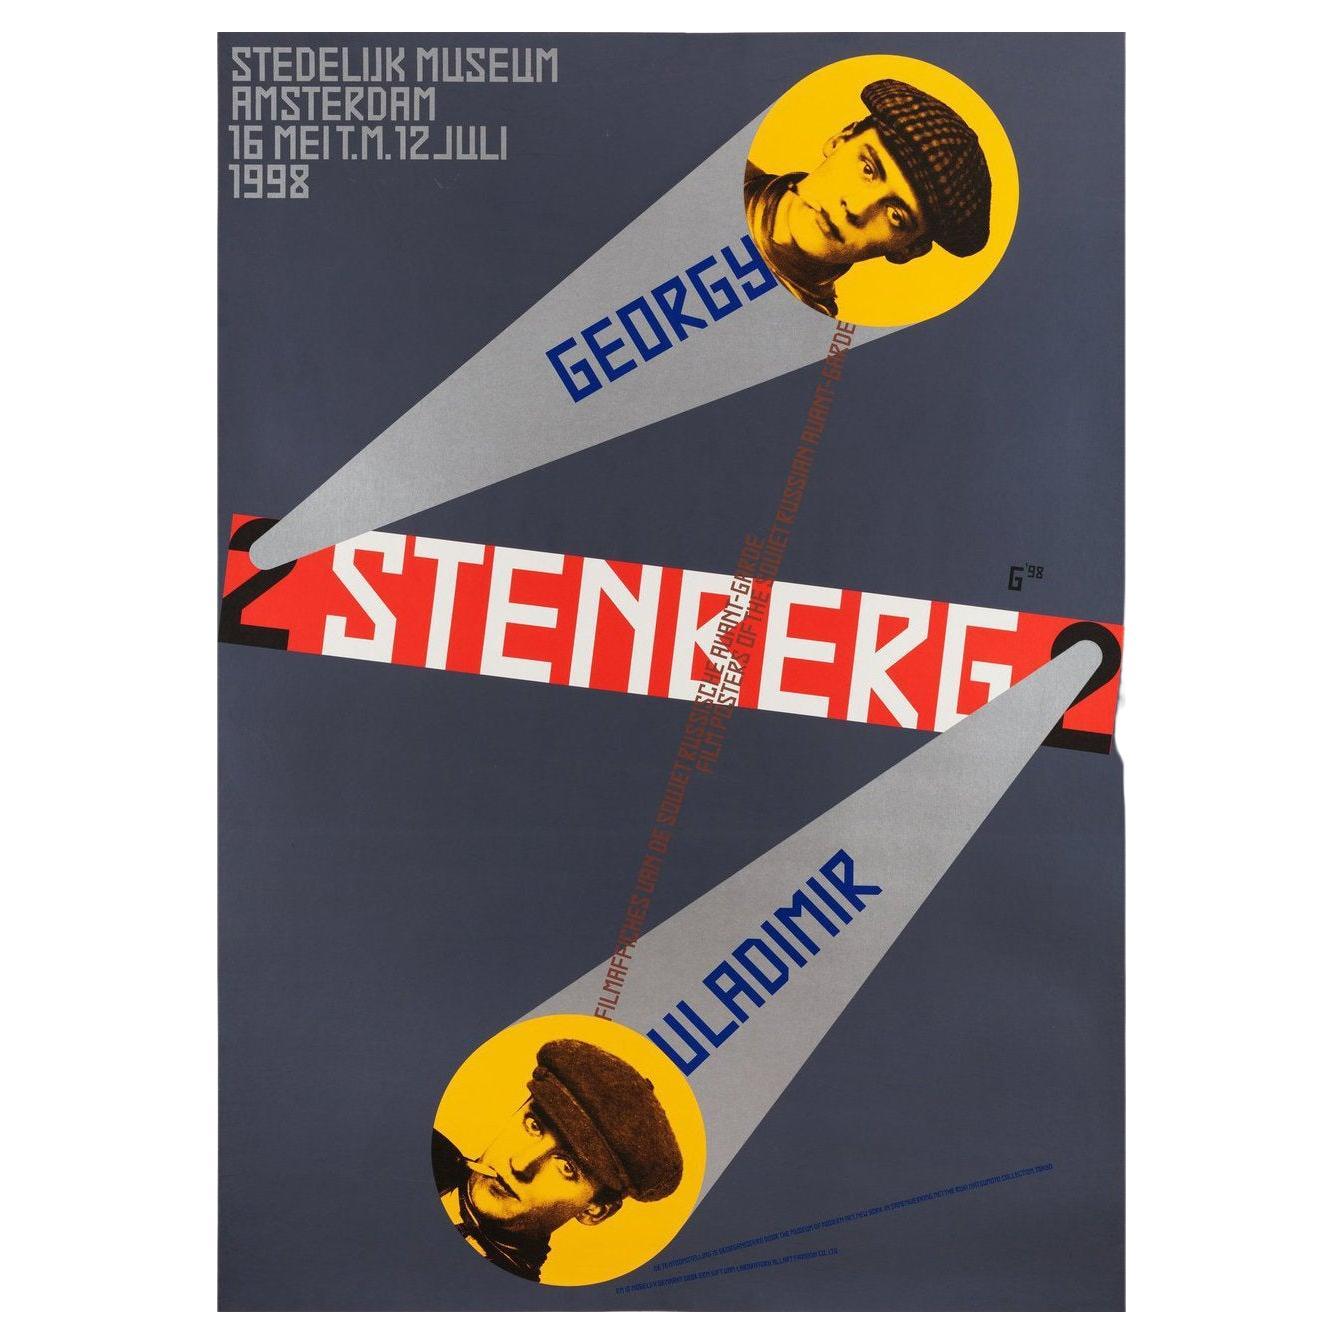 Filmaffiches Van Gregory En Vladamir Stenberg 1998 Swiss A0 Film Poster For Sale